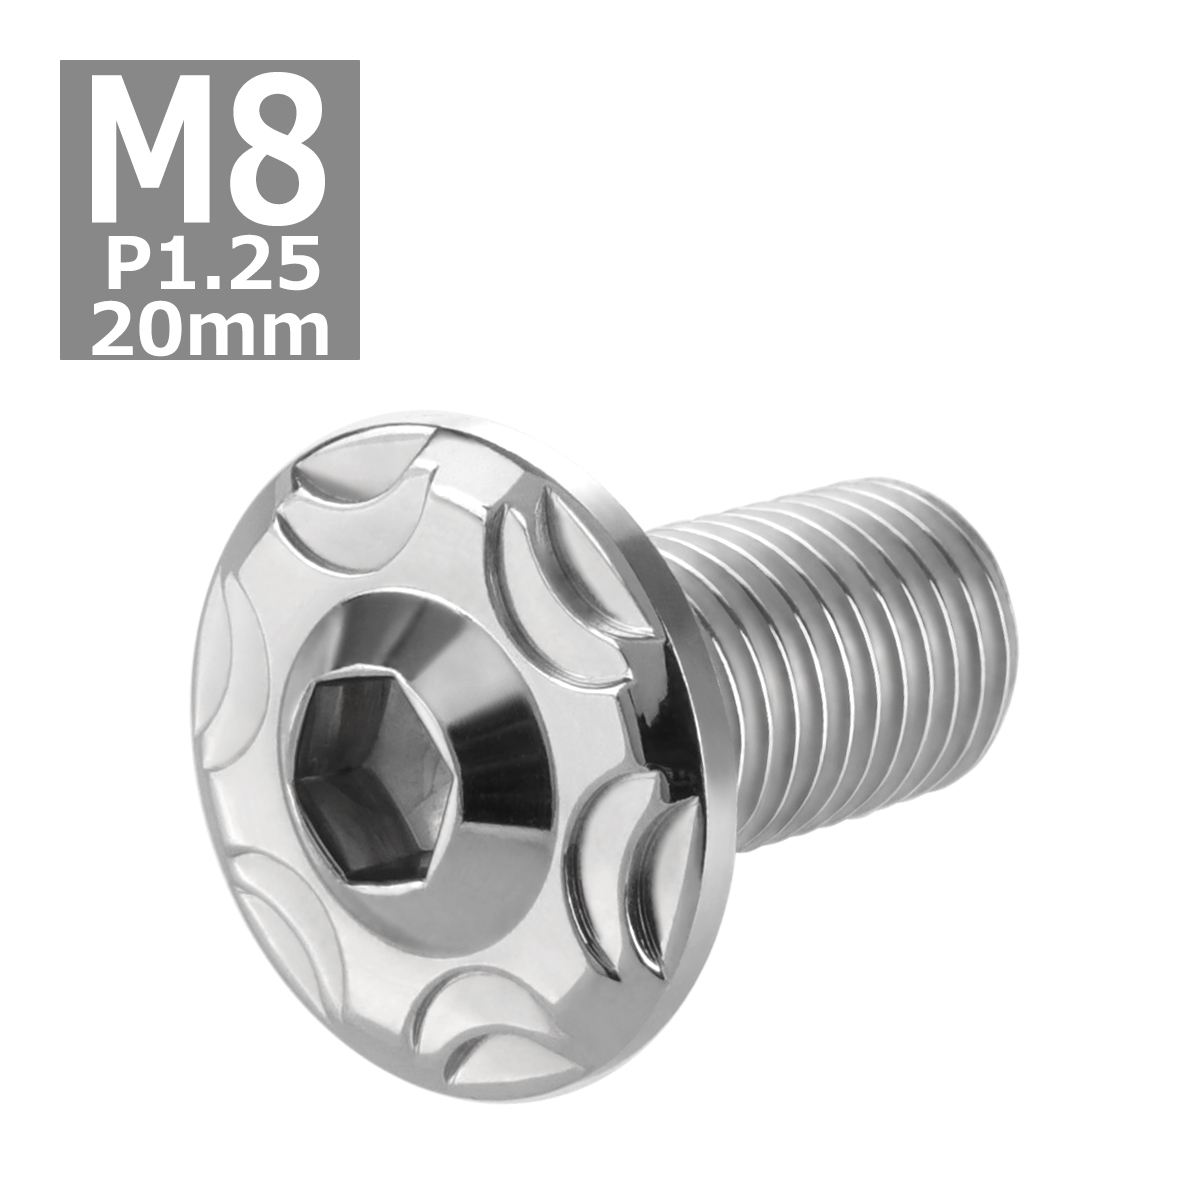 ボタンボルト M8×20mm P1.25 スノーヘッド フランジ付き ステンレス シルバー 1個 TR0462